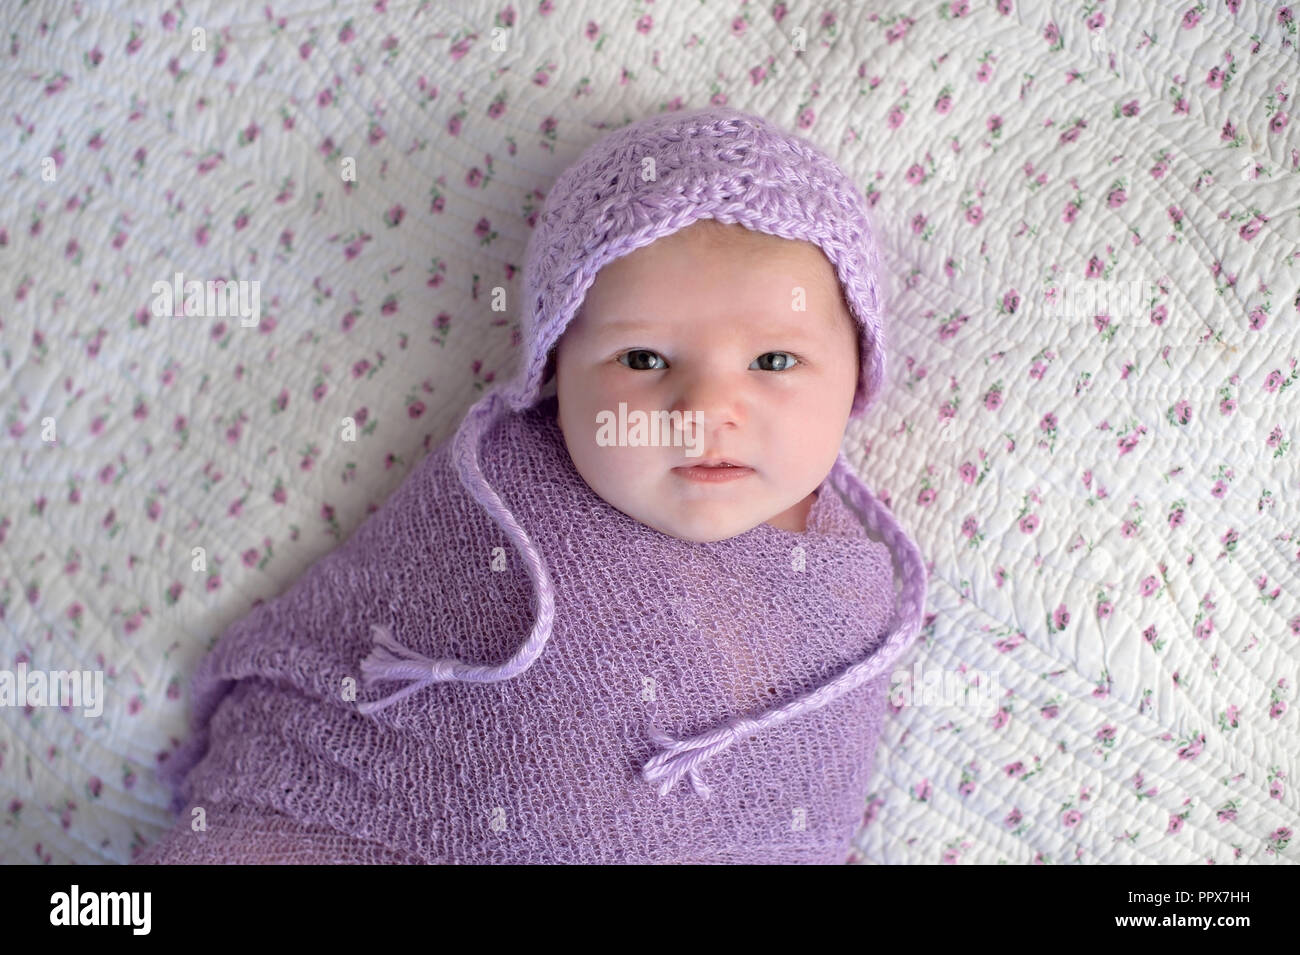 Einen Monat altes Baby Mädchen mit einem Motorhaube und Gepuckte in einem Lavendel Lila wickeln. Stockfoto